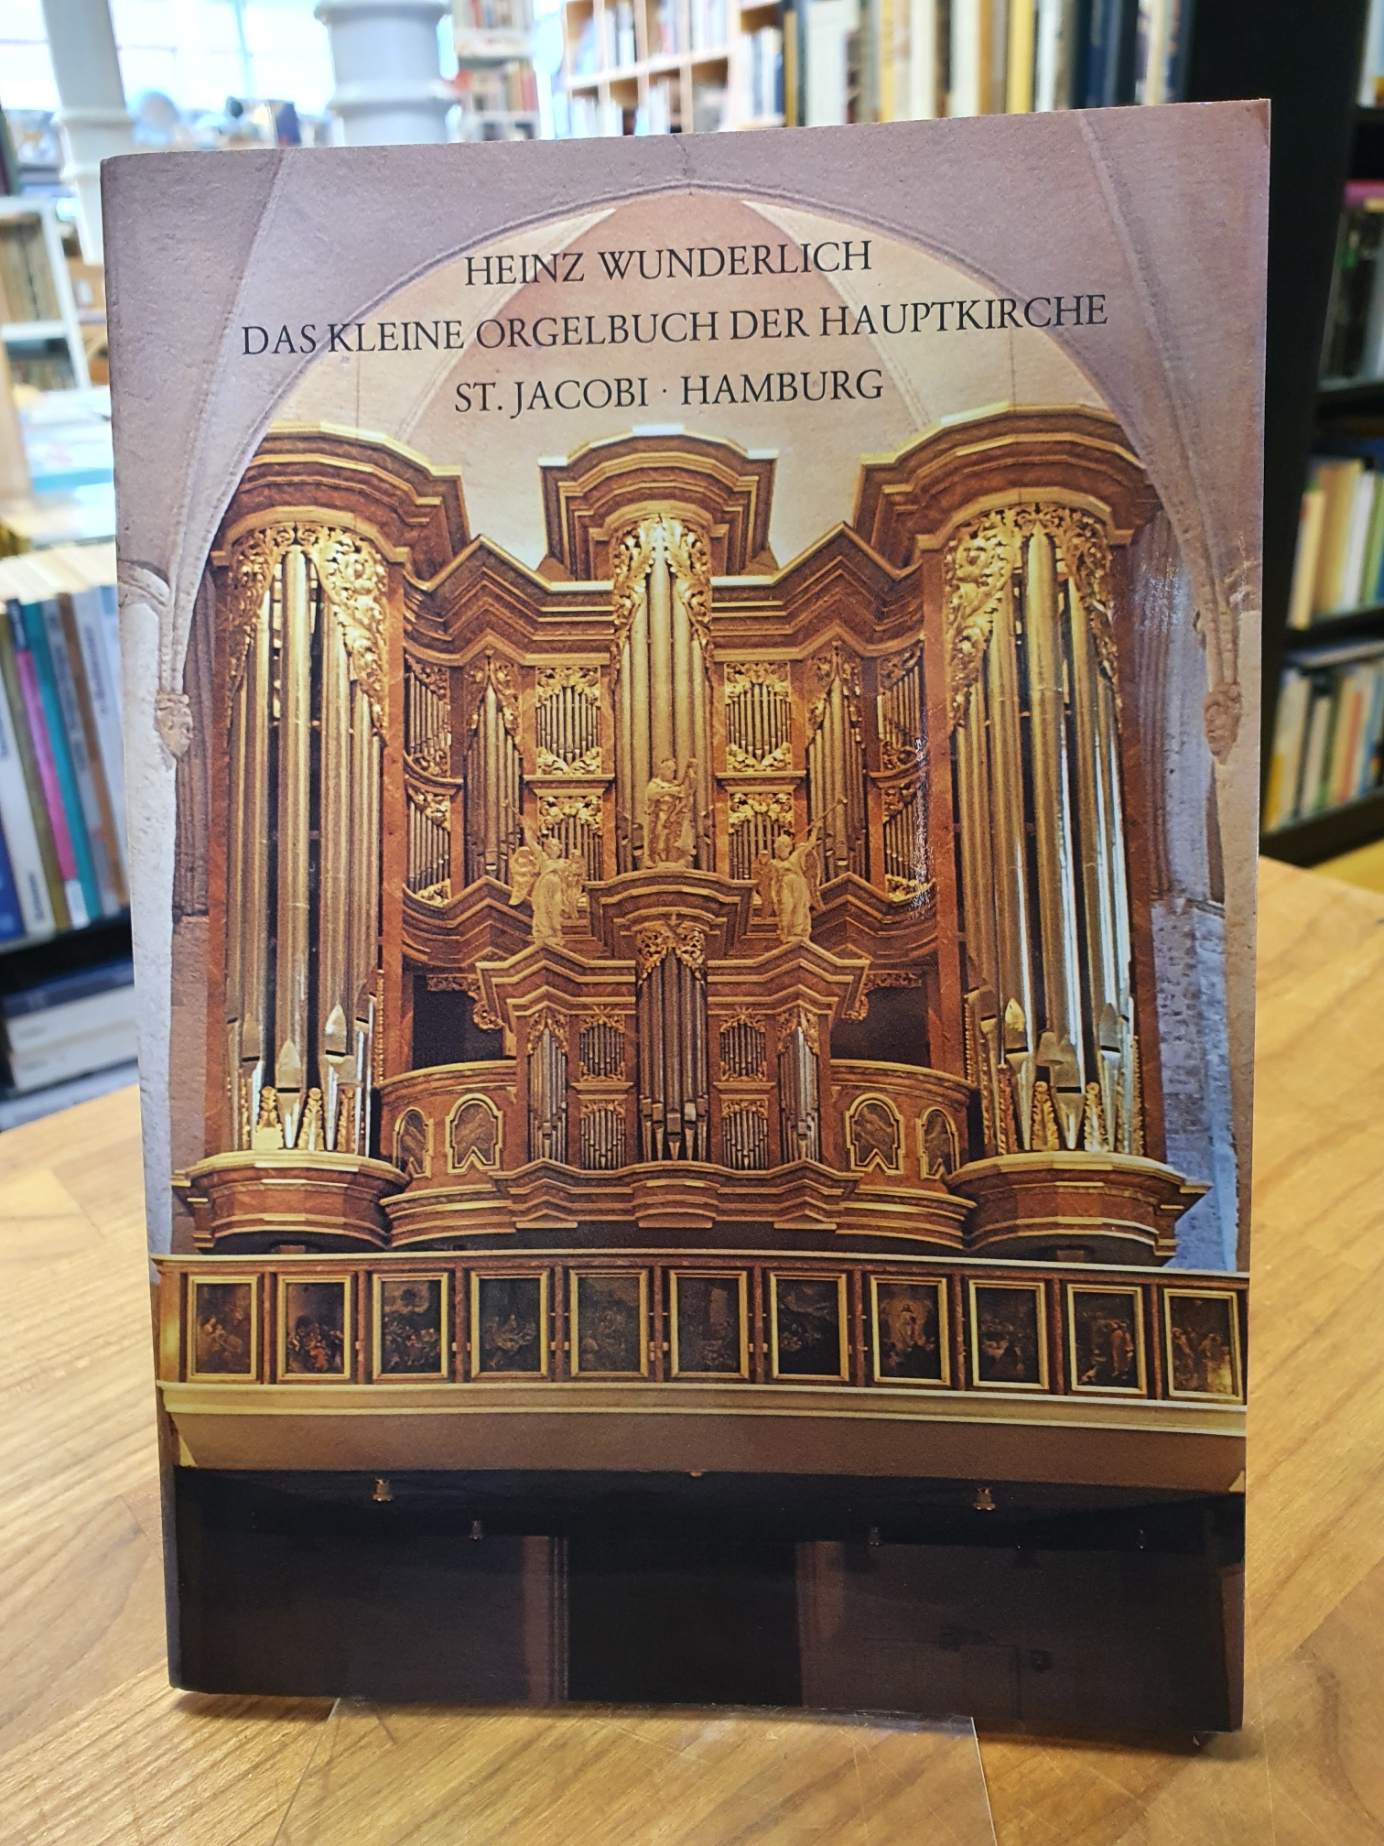 Wunderlich, Das kleine Orgelbuch der Hauptkirche St. Jacobi, Hamburg,